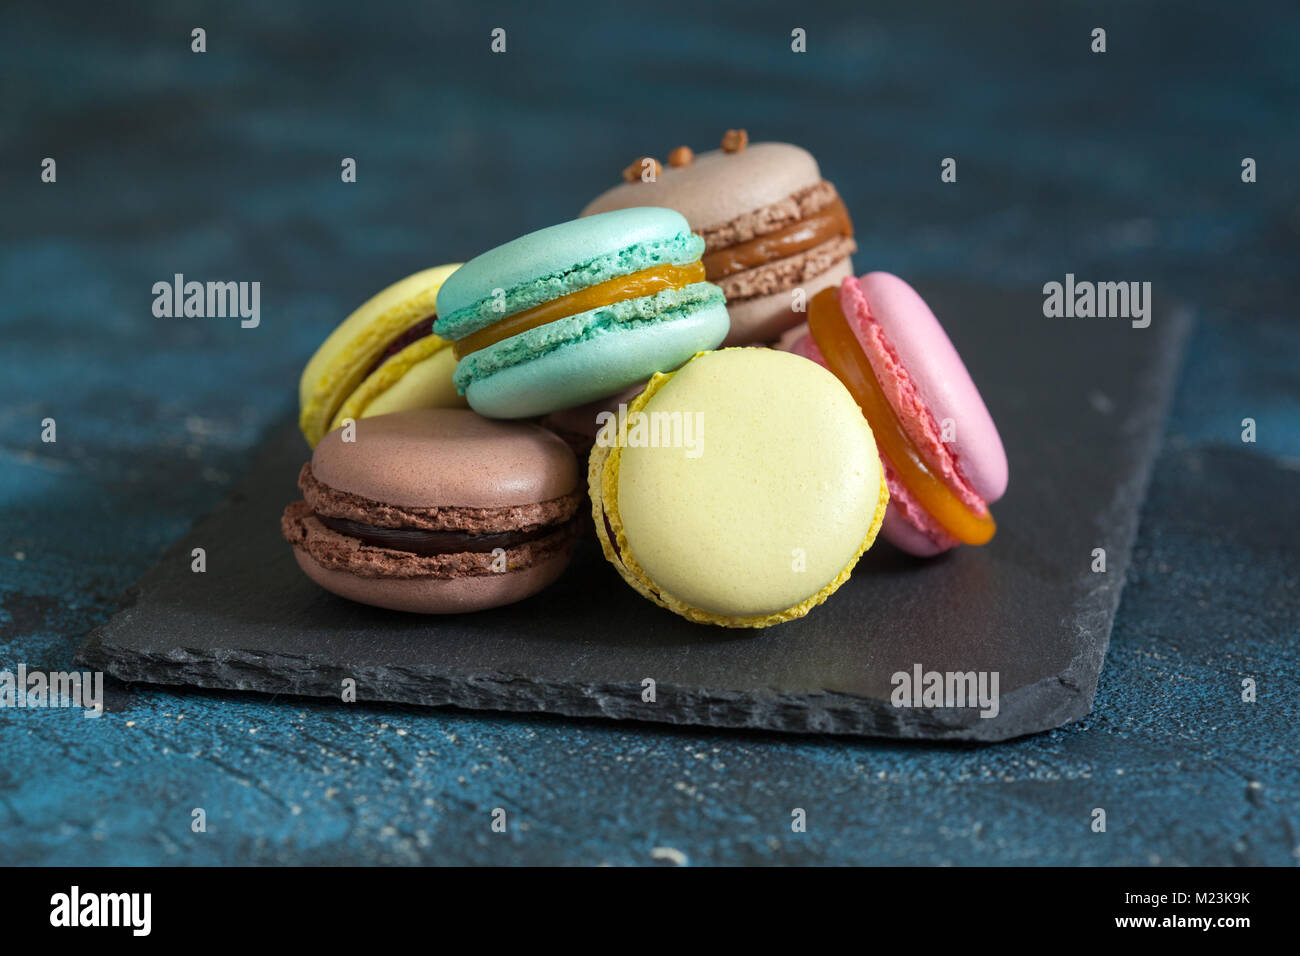 Macaron macaron ou sur fond bleu, biscuits colorés avec différents poids (chocolat, caramel, mangue, cassis). Selective focus Banque D'Images